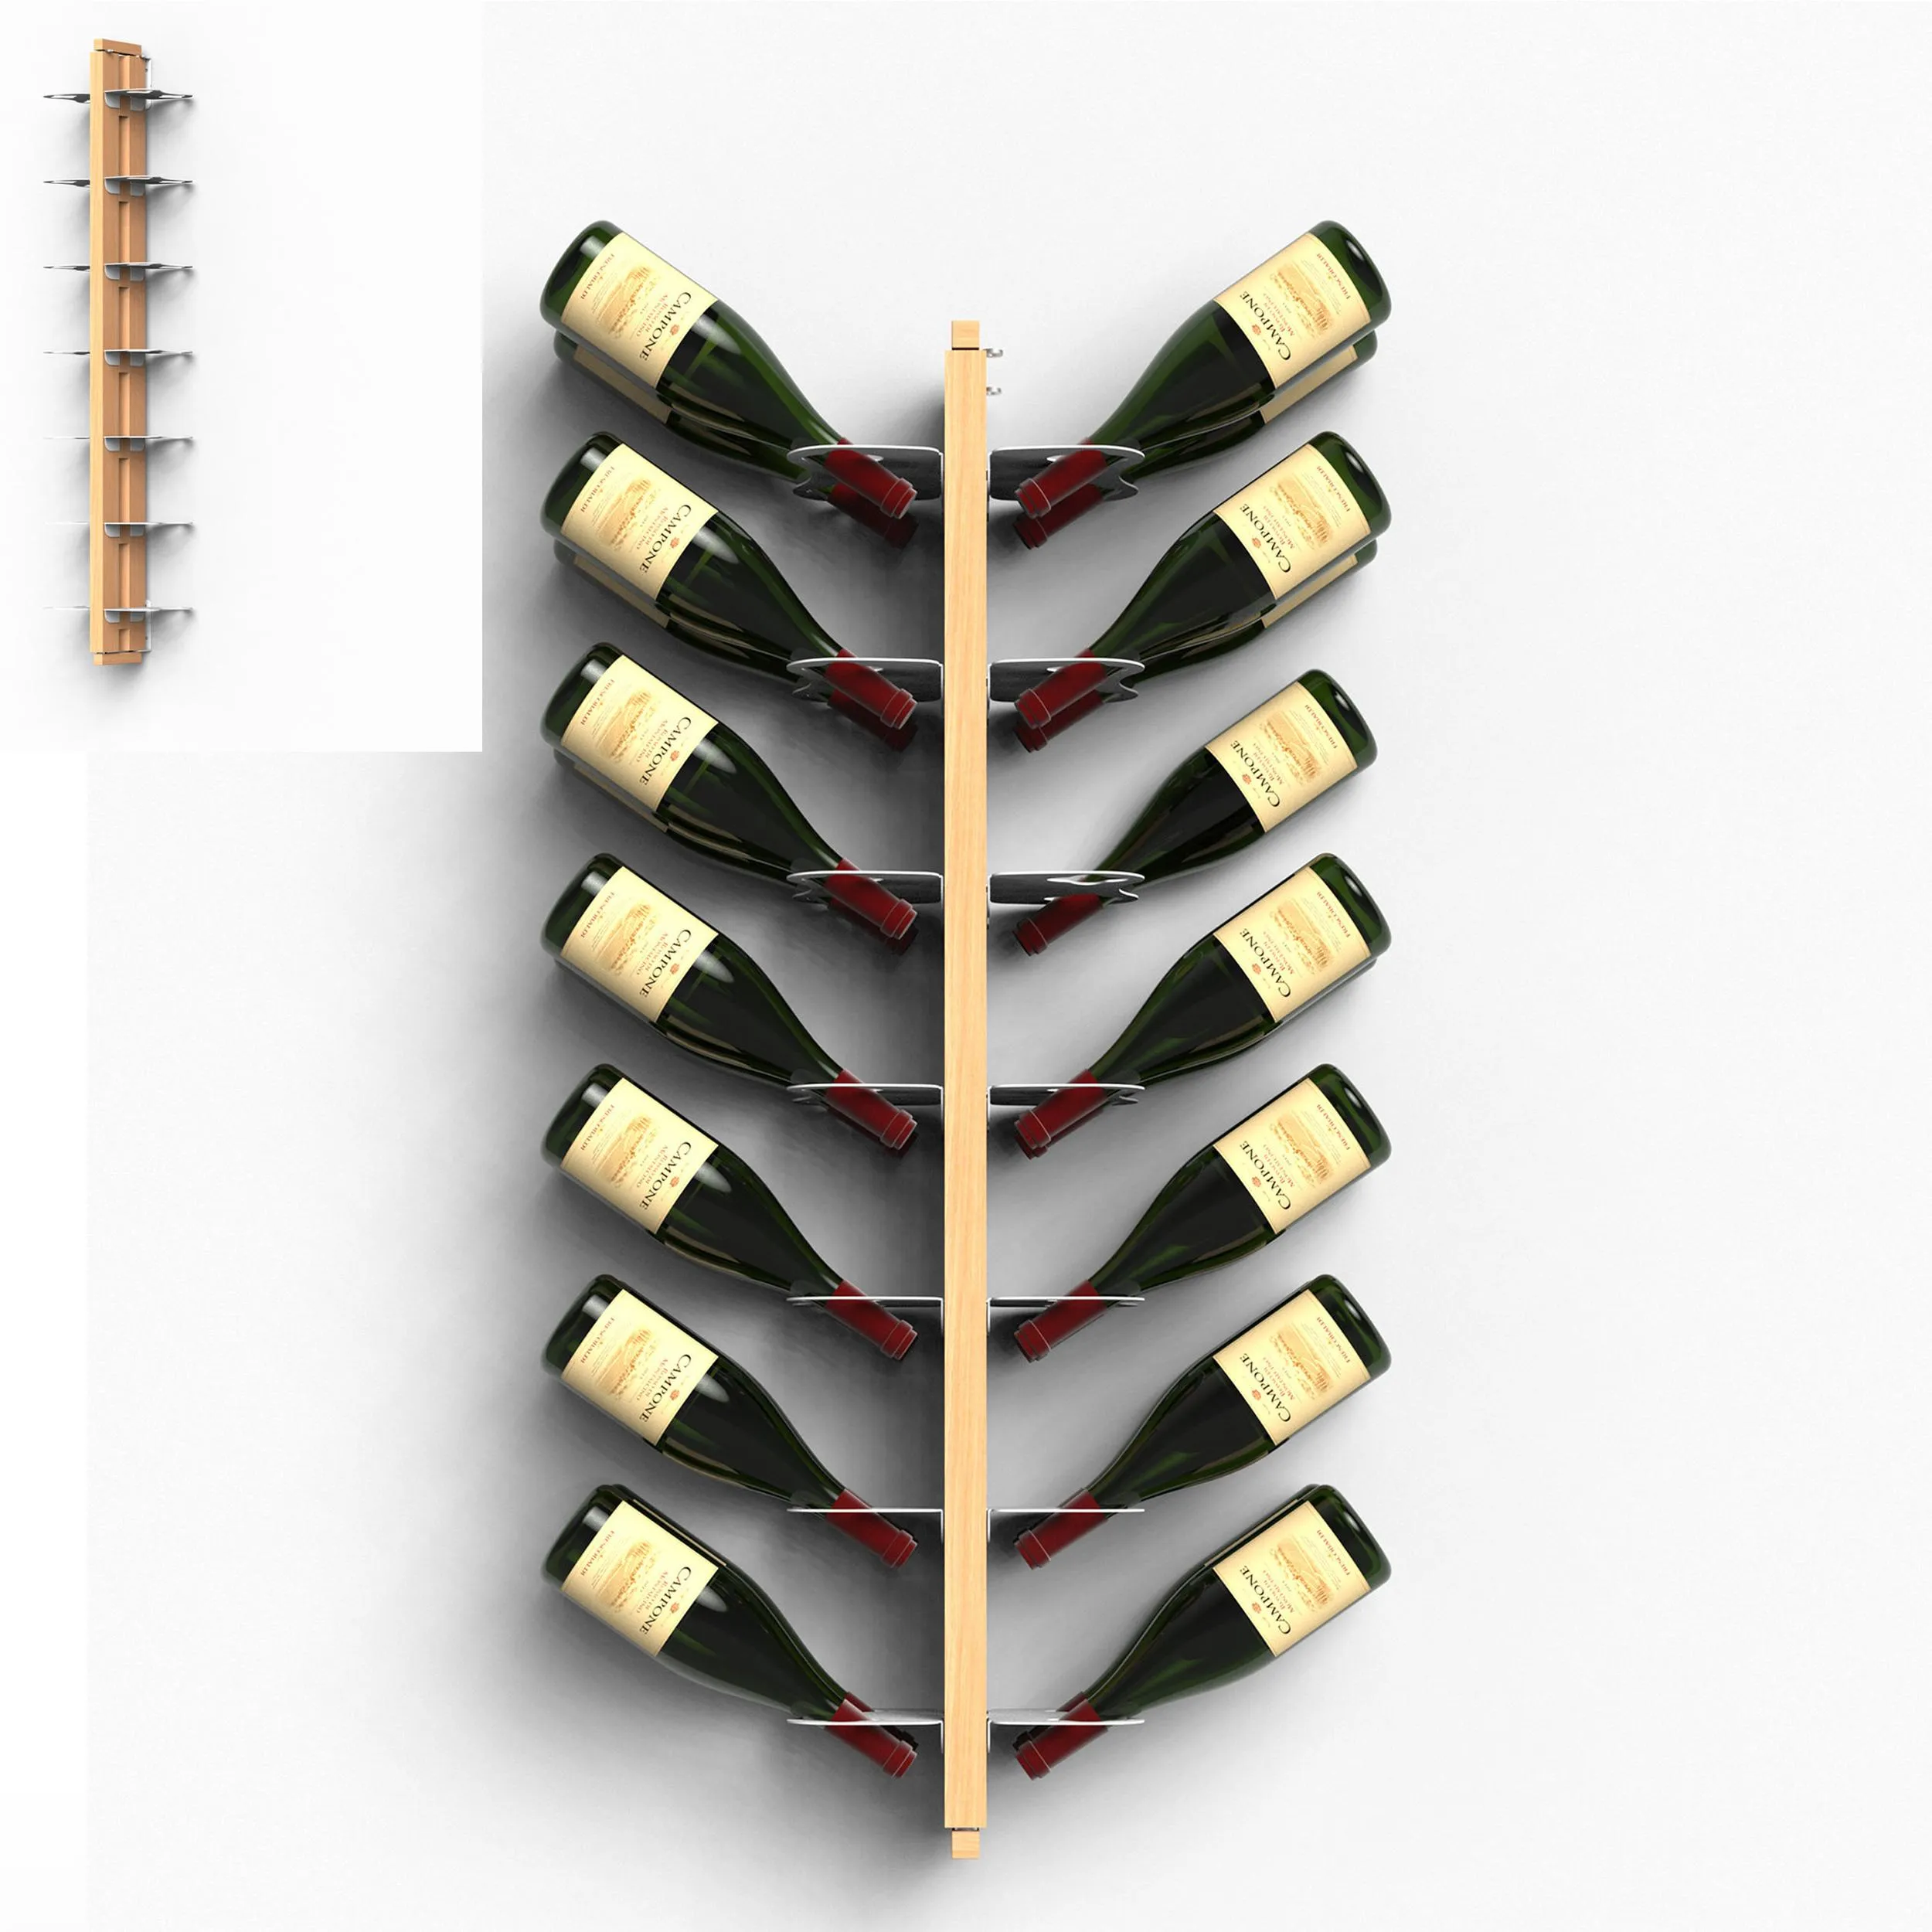 Porta Bottiglie di Vino Sospesa Bifacciale fissaggio a muro 20x26xh 110 cm con struttura in legno massello di faggio evaporato colore naturale. Mensole in acciaio smaltato